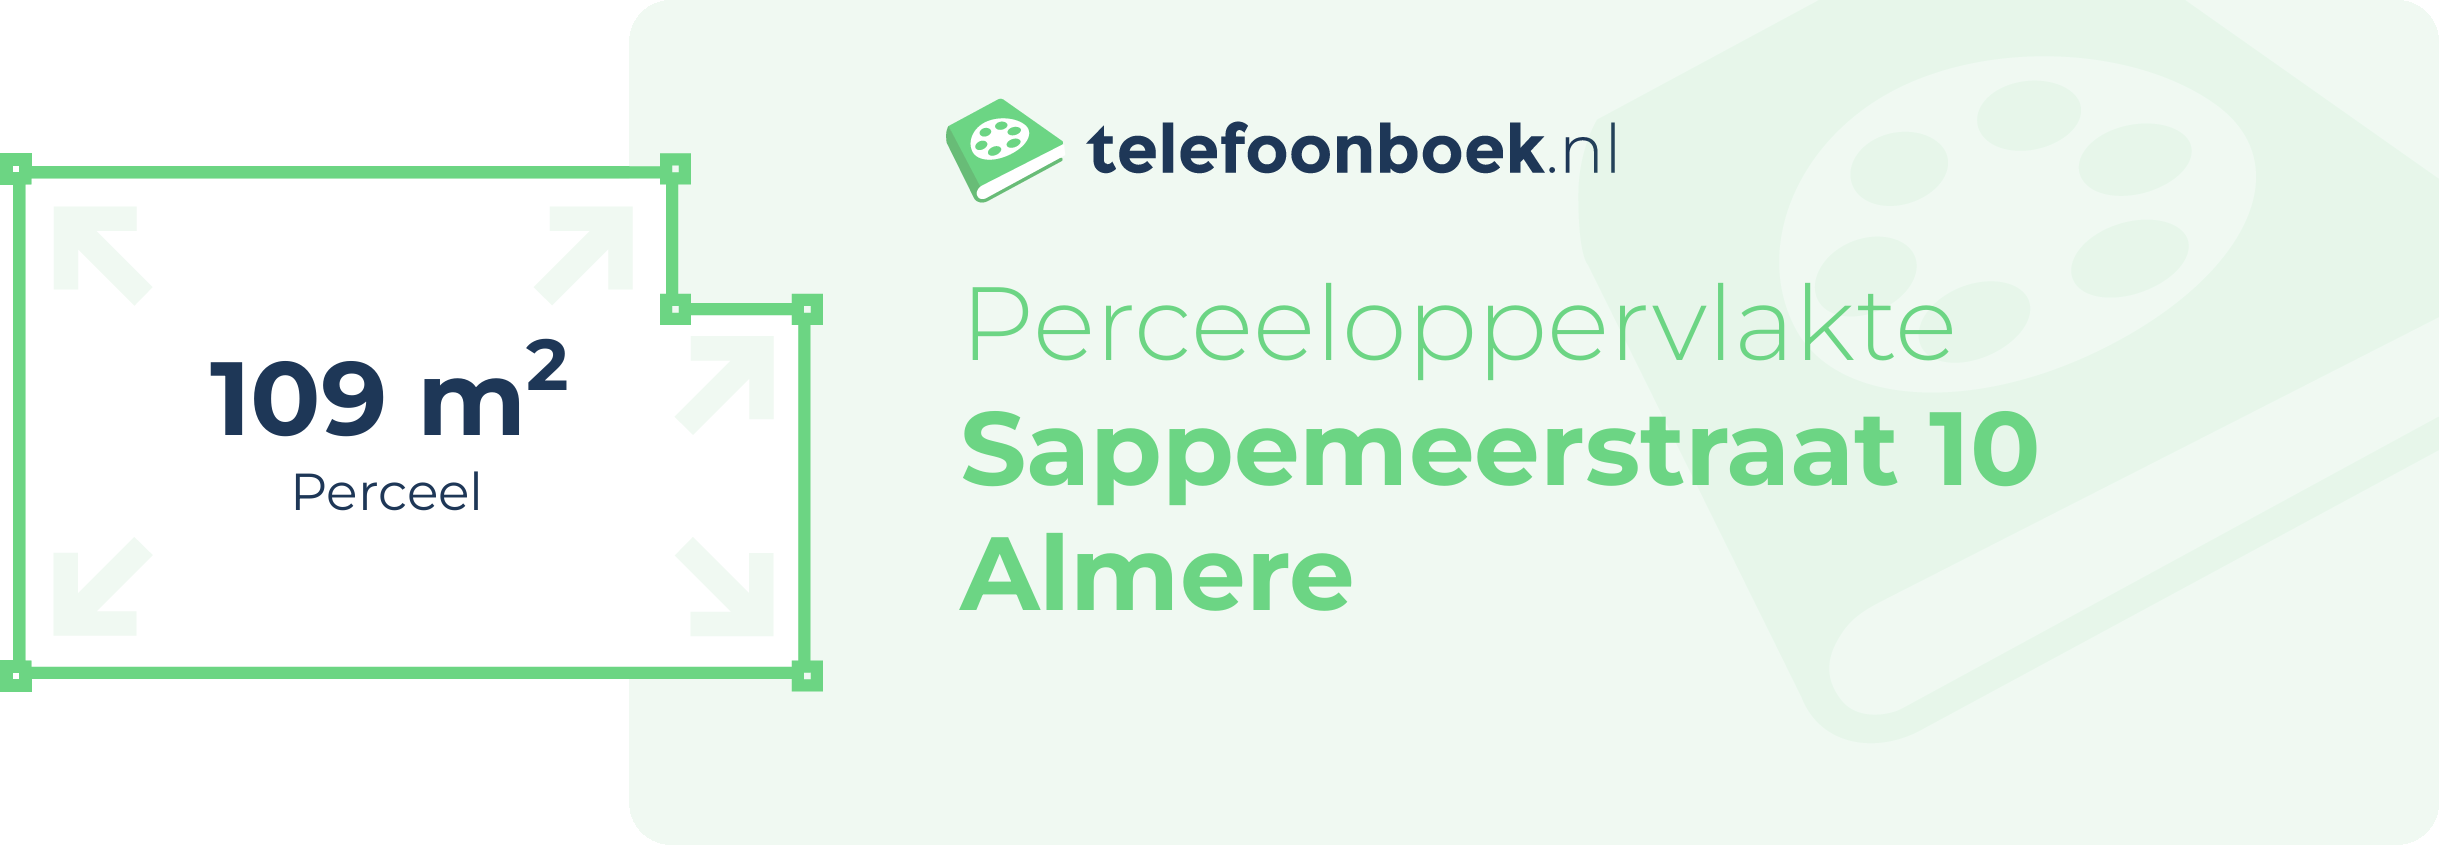 Perceeloppervlakte Sappemeerstraat 10 Almere